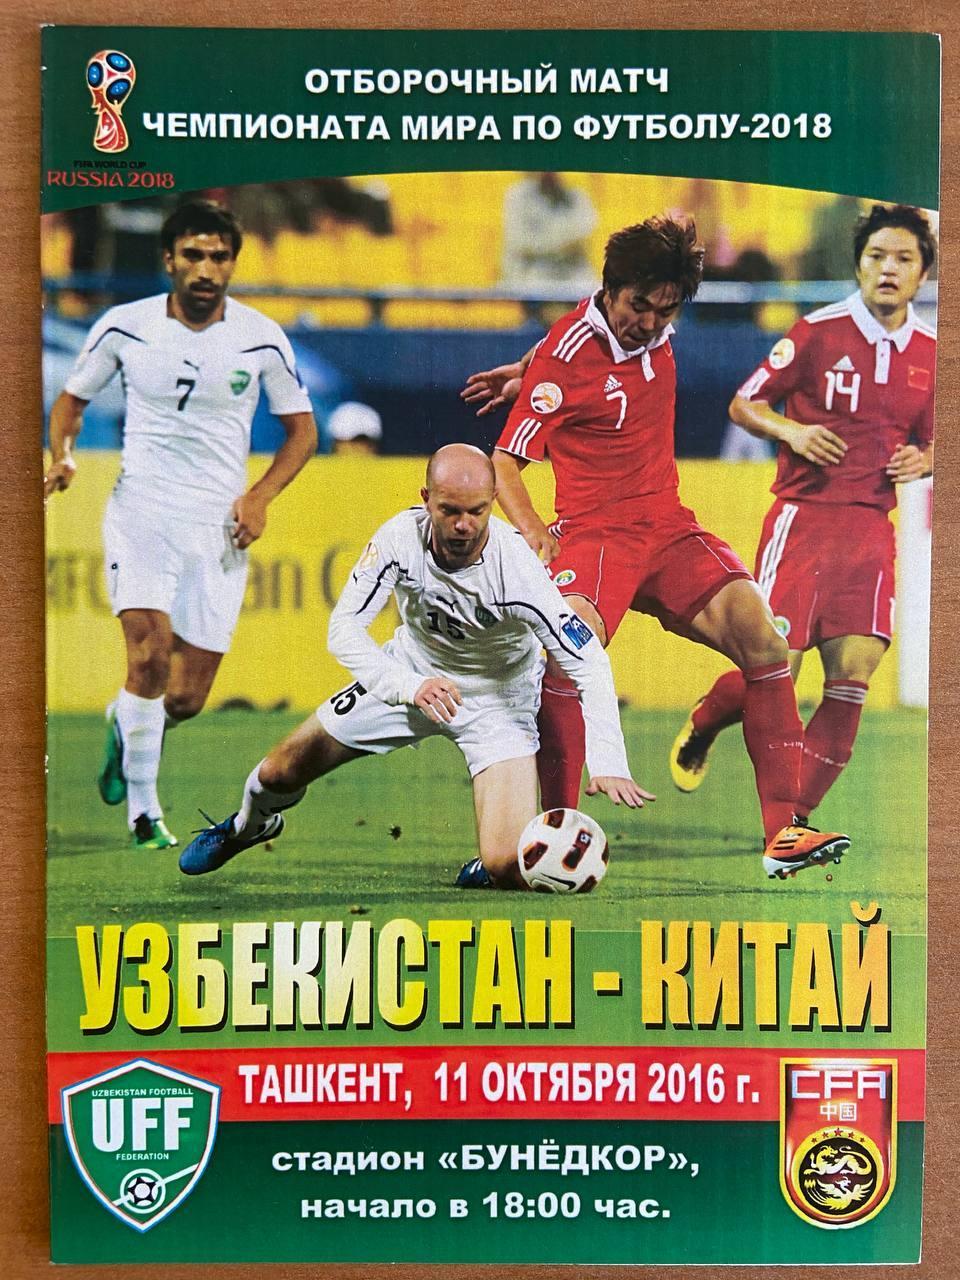 Узбекистан (сборная) - Китай (сборная), 11 октября 2016 г.